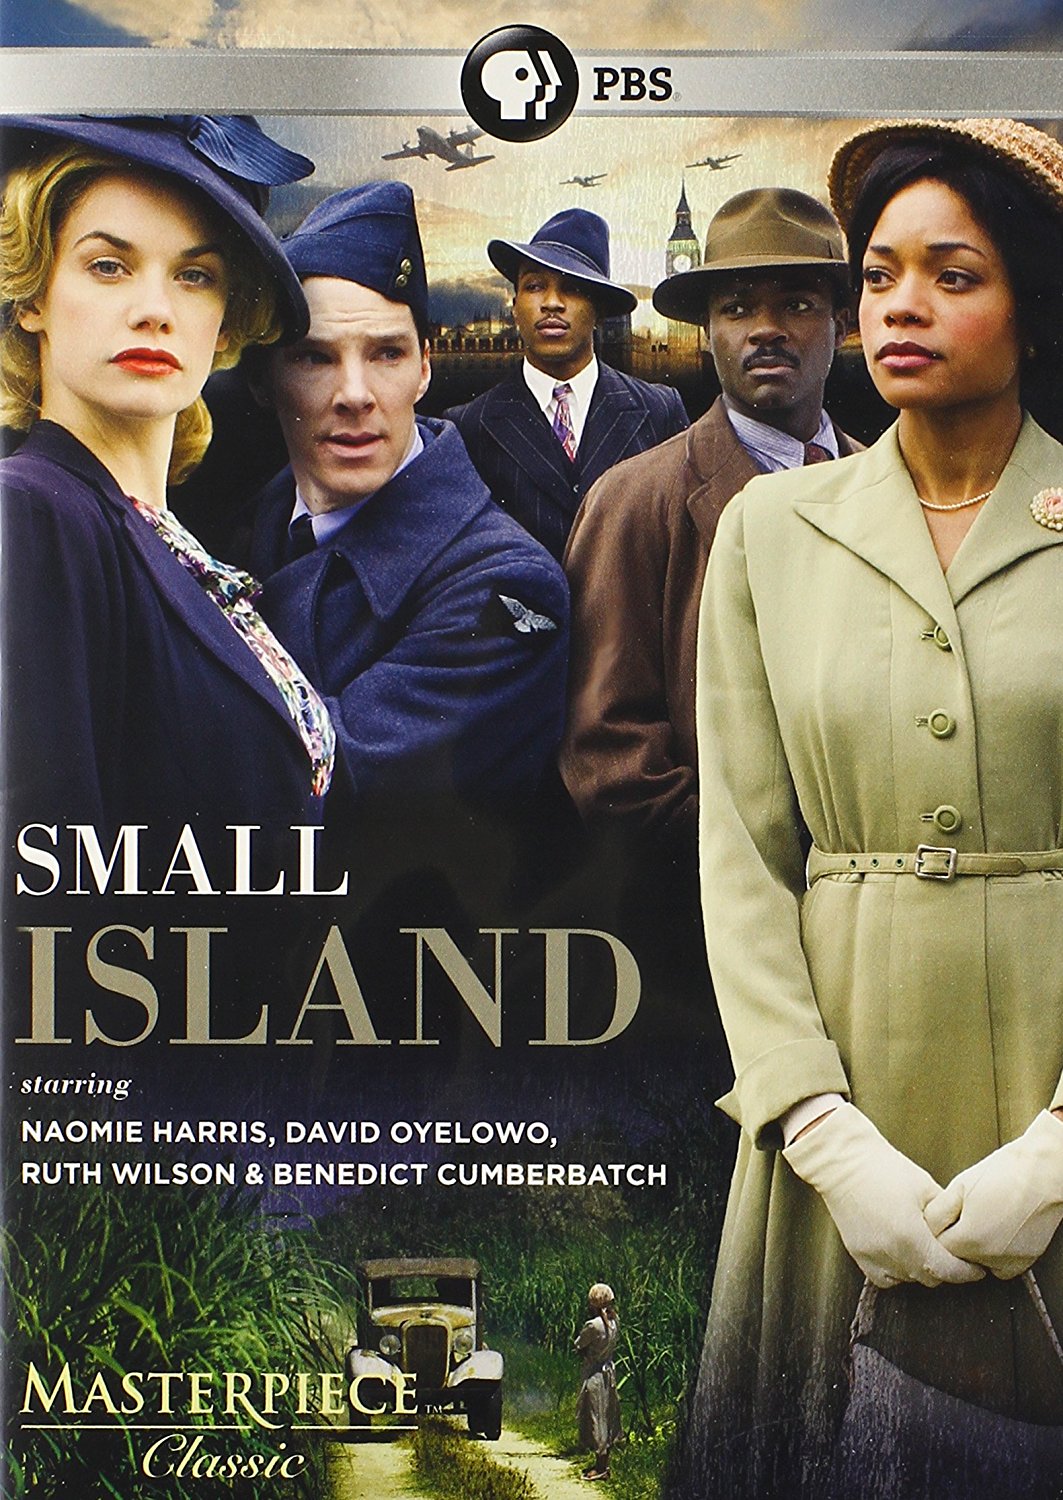 Ashley Walters در صحنه فیلم سینمایی Small Island به همراه بندیکت کامبربچ، دیوید اویلوو، نائومی هریس و Ruth Wilson